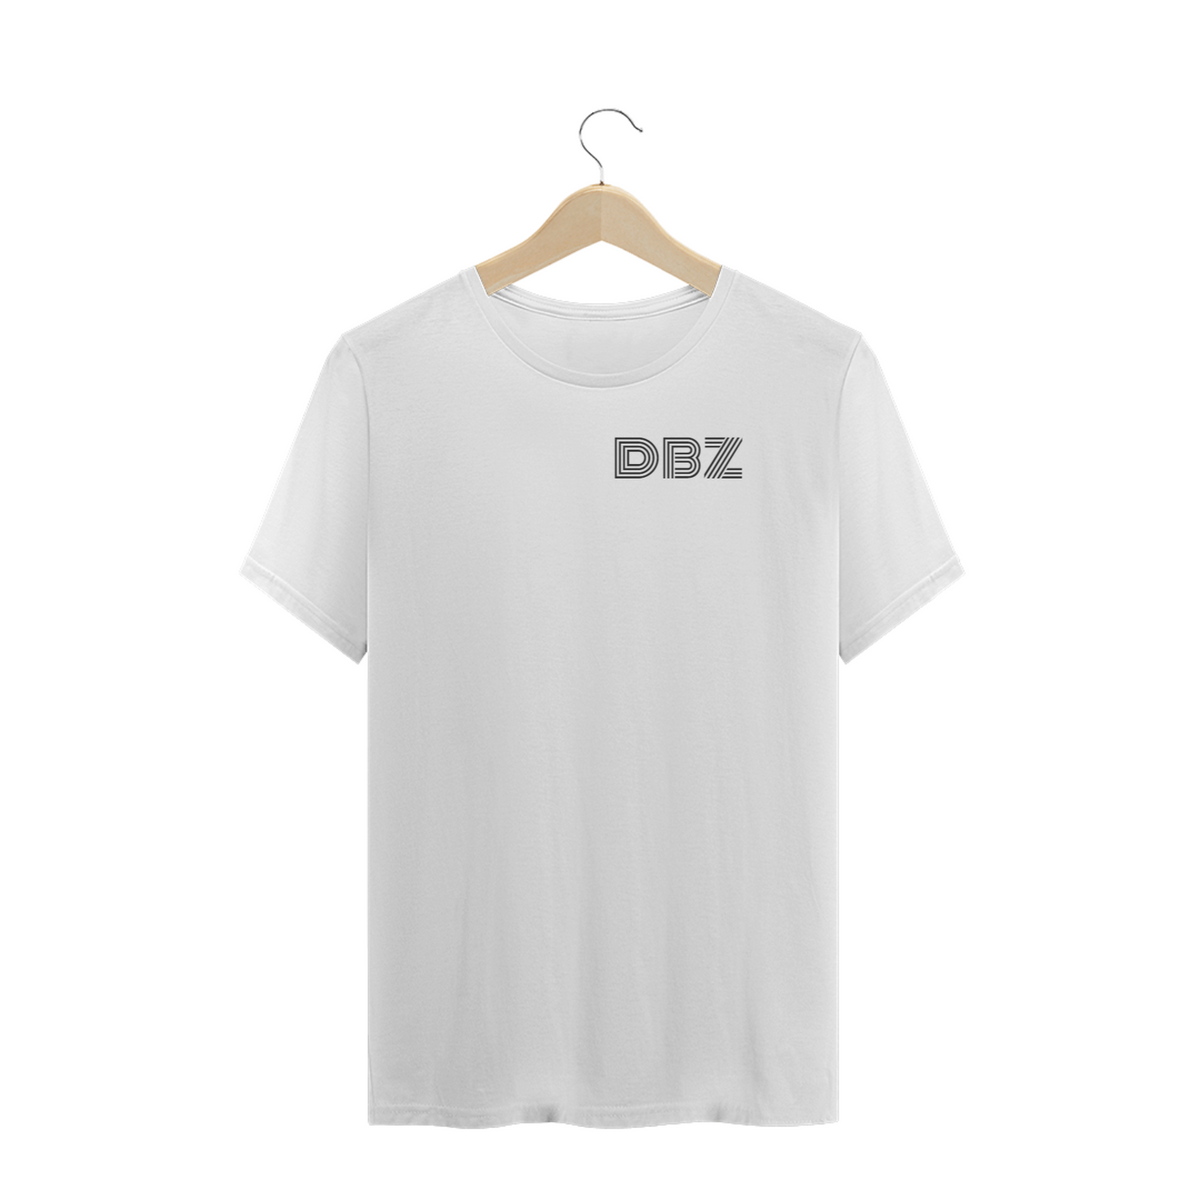 Nome do produto: camisa plus size DBZ 